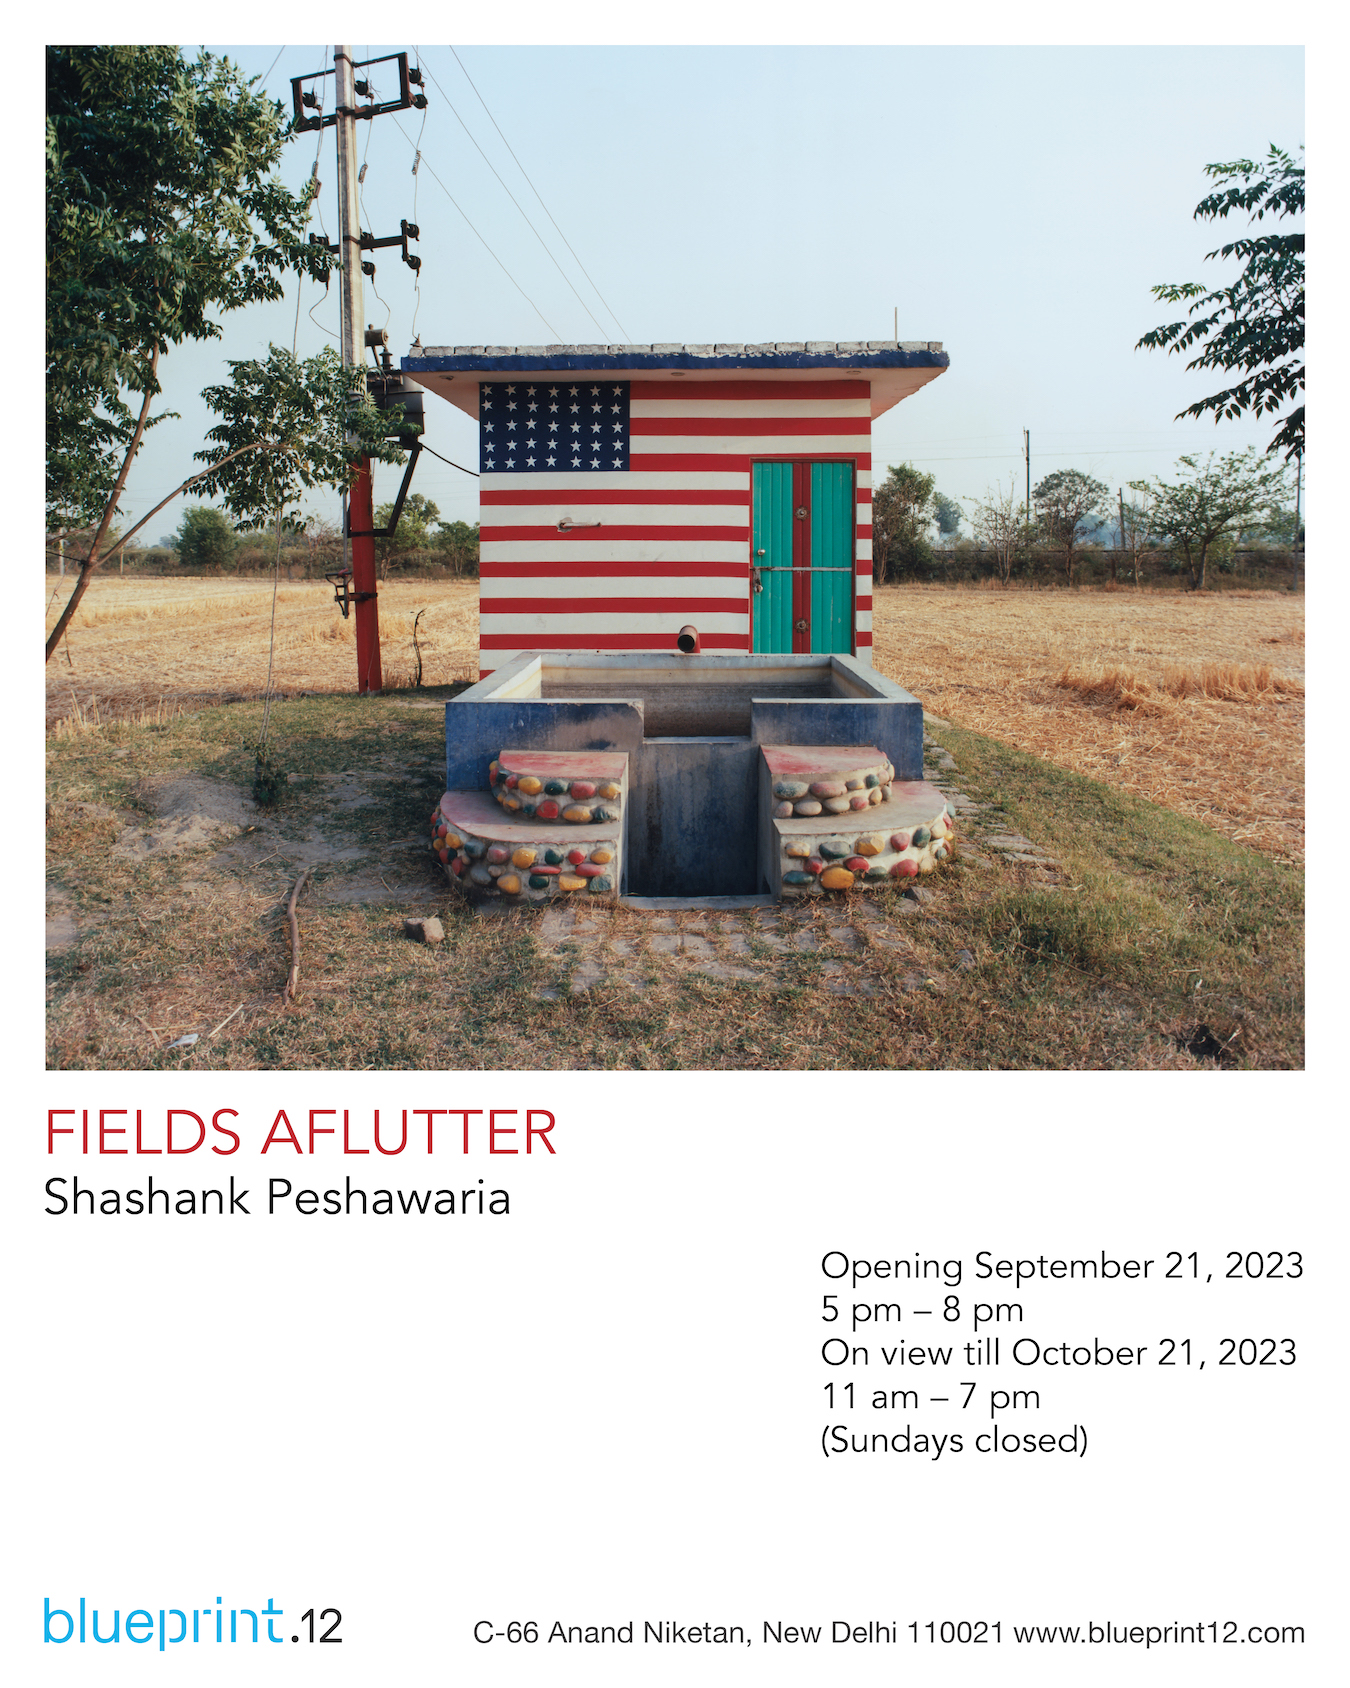 Shashank Peshawaria, photography, Punjab fields, migration